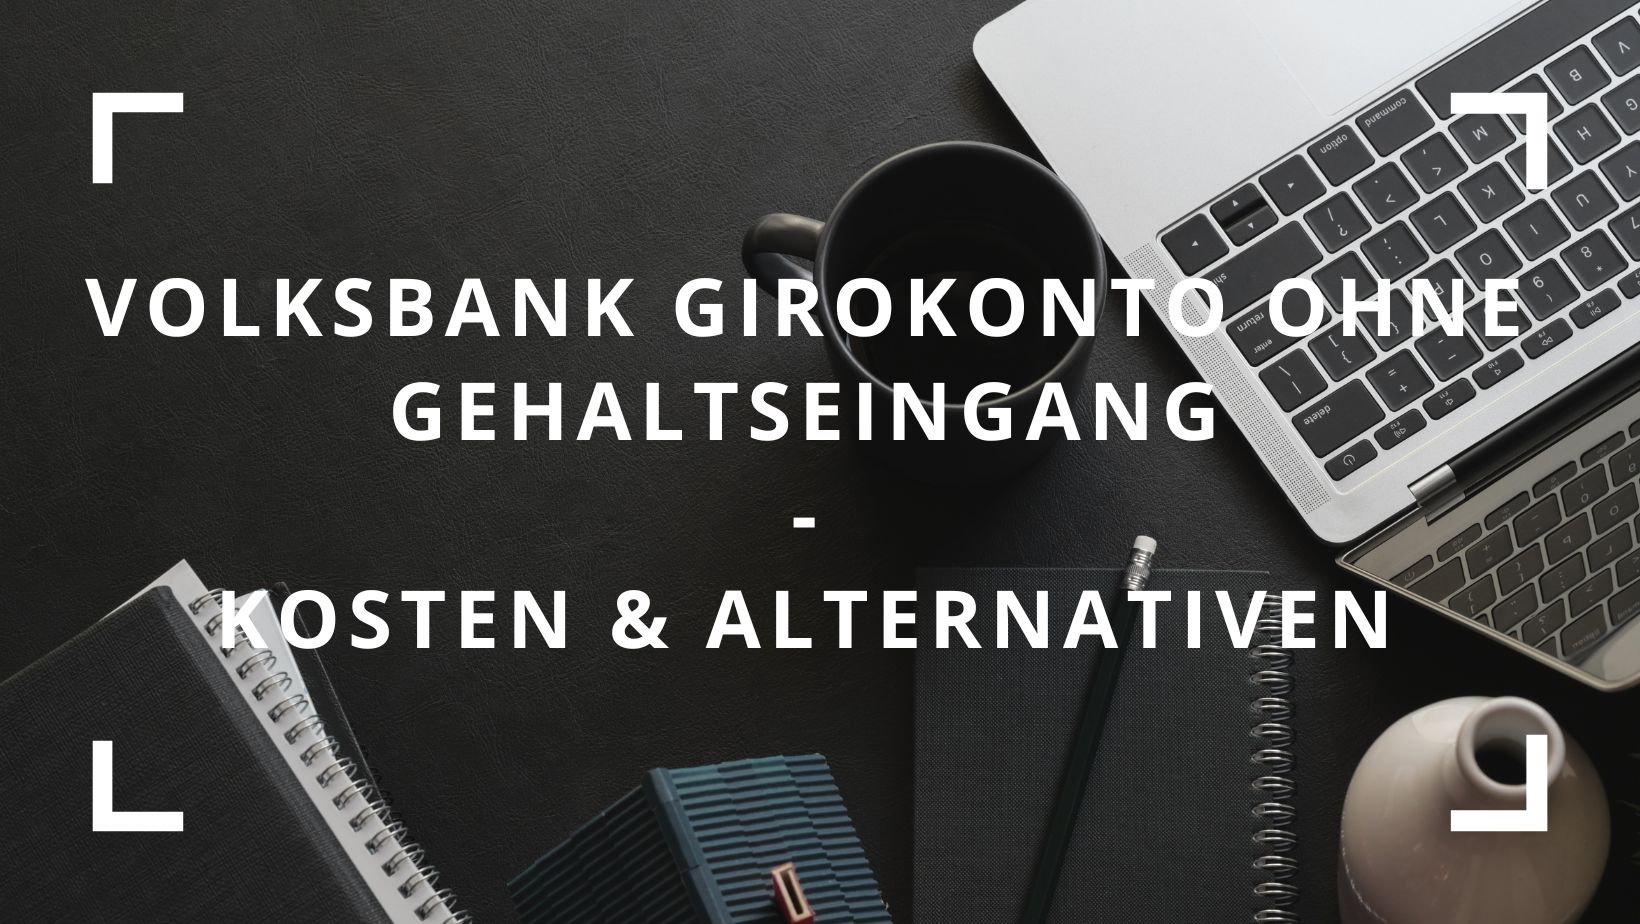 Titelbild zum Beitrag: "Volksbank Girokonto ohne Gehaltseingang Kosten & Alternativen"